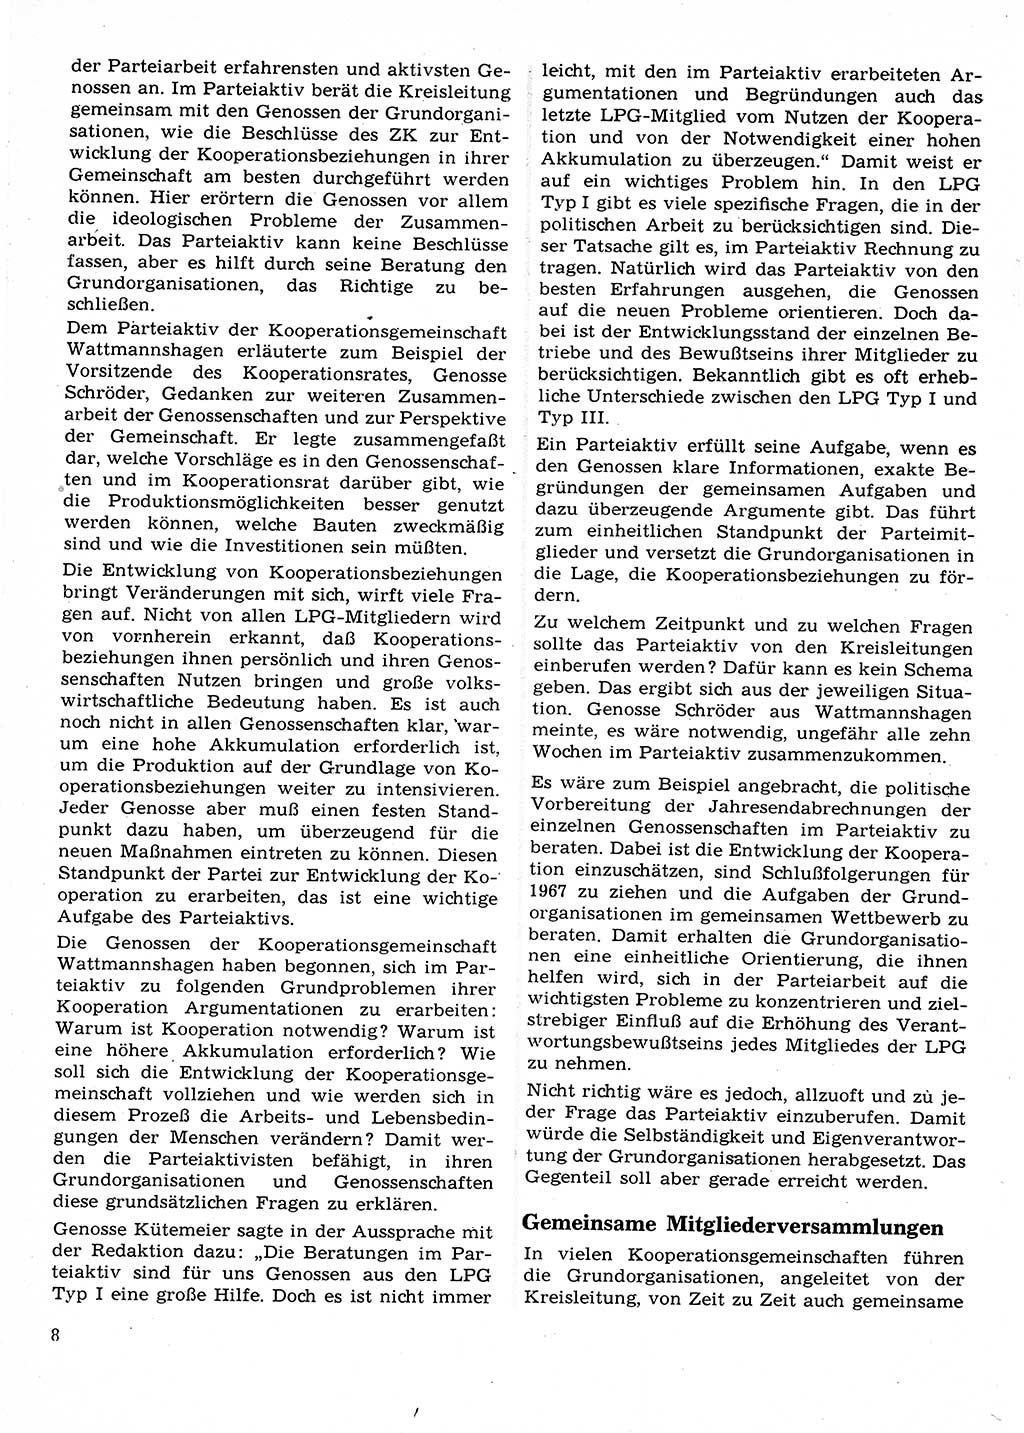 Neuer Weg (NW), Organ des Zentralkomitees (ZK) der SED (Sozialistische Einheitspartei Deutschlands) für Fragen des Parteilebens, 22. Jahrgang [Deutsche Demokratische Republik (DDR)] 1967, Seite 8 (NW ZK SED DDR 1967, S. 8)